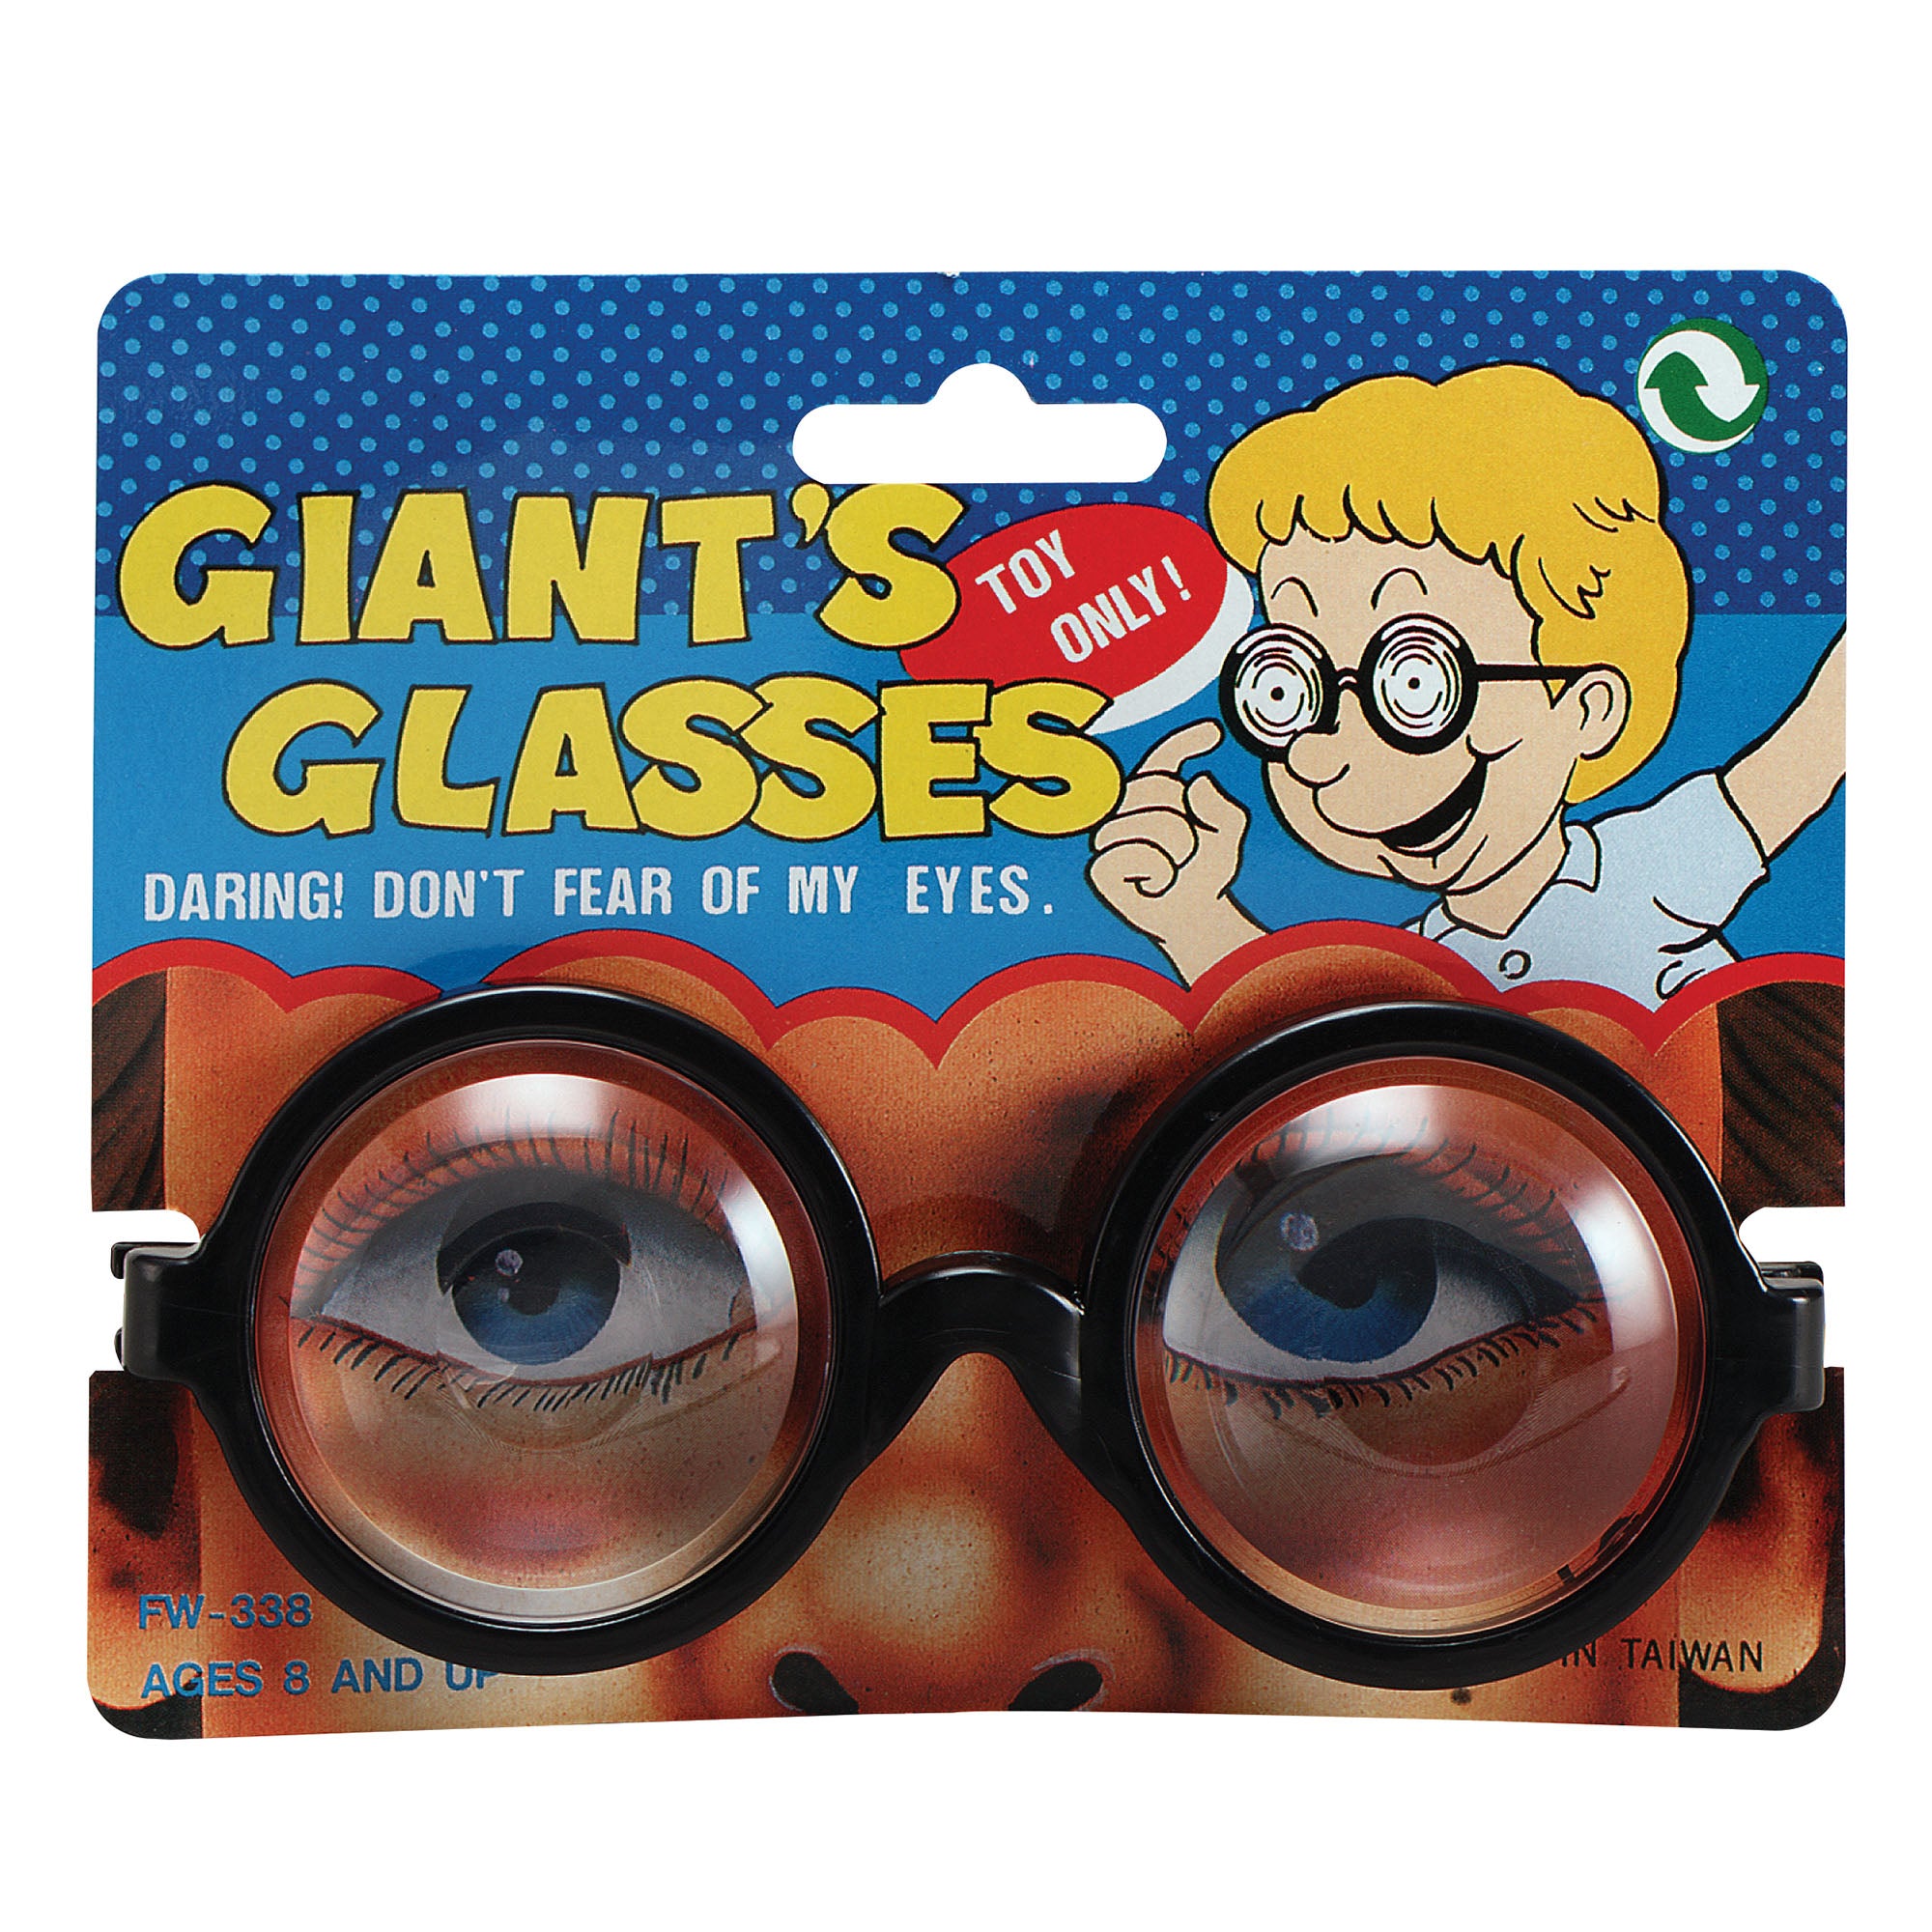 Giant's Glasses